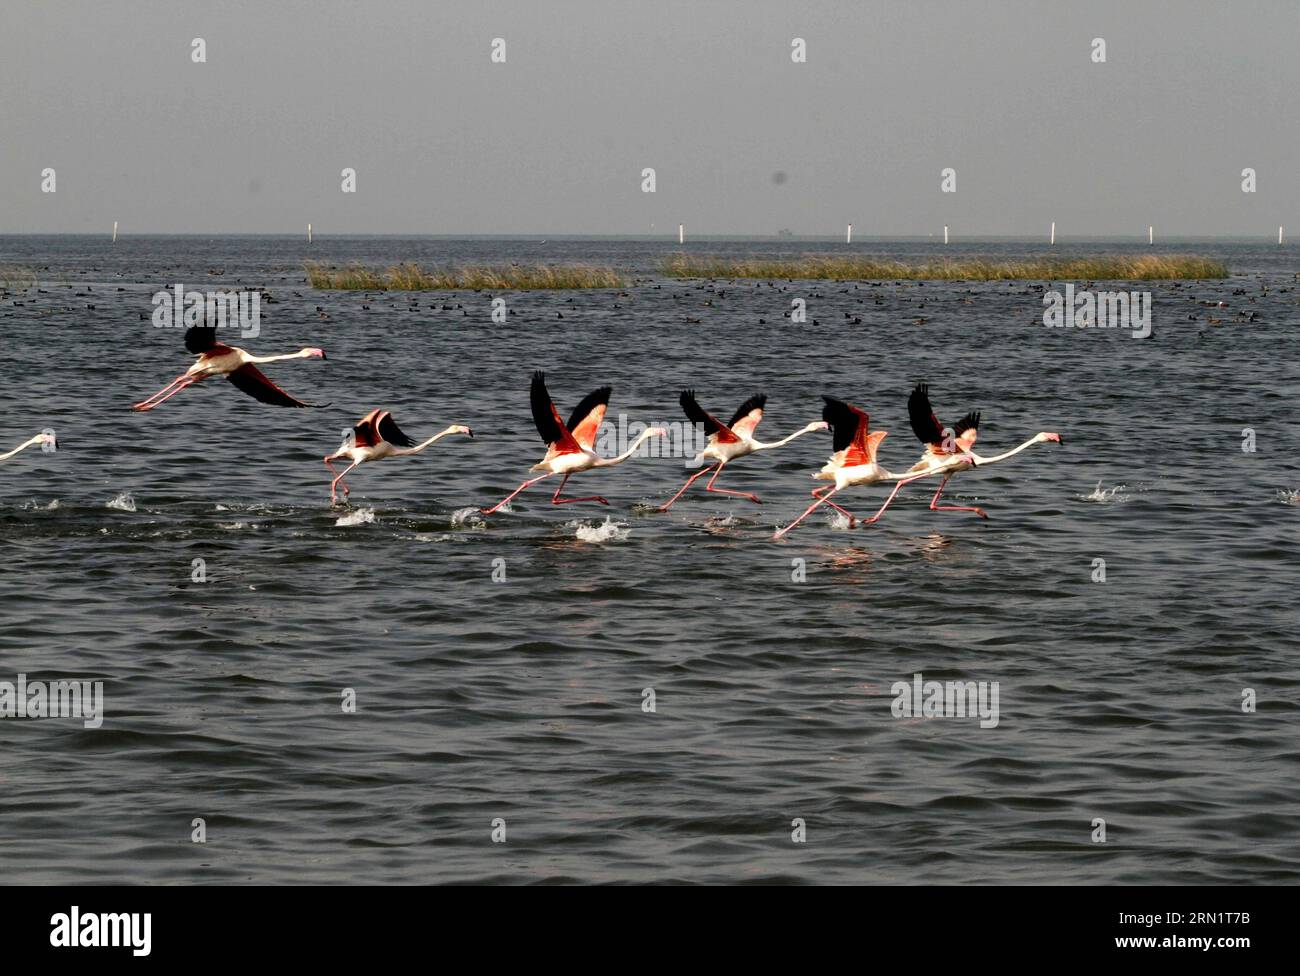 (150120) -- BHUBANESWAR, 20 gennaio 2015 -- foto scattata il 19 gennaio 2015 mostra i fenicotteri migratori che battono le ali dall'acqua del lago Chilka mentre cambiano posto per mangiare nel distretto di Khurda nell'Orissa meridionale vicino a Bhubaneswar, capitale dello stato indiano orientale Orissa, India. Milioni di uccelli migratori arrivano nel lago Chilka ogni anno all'inizio dell'inverno e volano indietro prima della stagione dei monsoni). INDIA-ORISSA-MIGRATORY FLAMINGOES Stringer PUBLICATIONxNOTxINxCHN Bhubaneswar 20 gennaio 2015 foto scattata IL 19 gennaio 2015 mostra il fenicottero che batte le loro ali dall'acqua di T Foto Stock